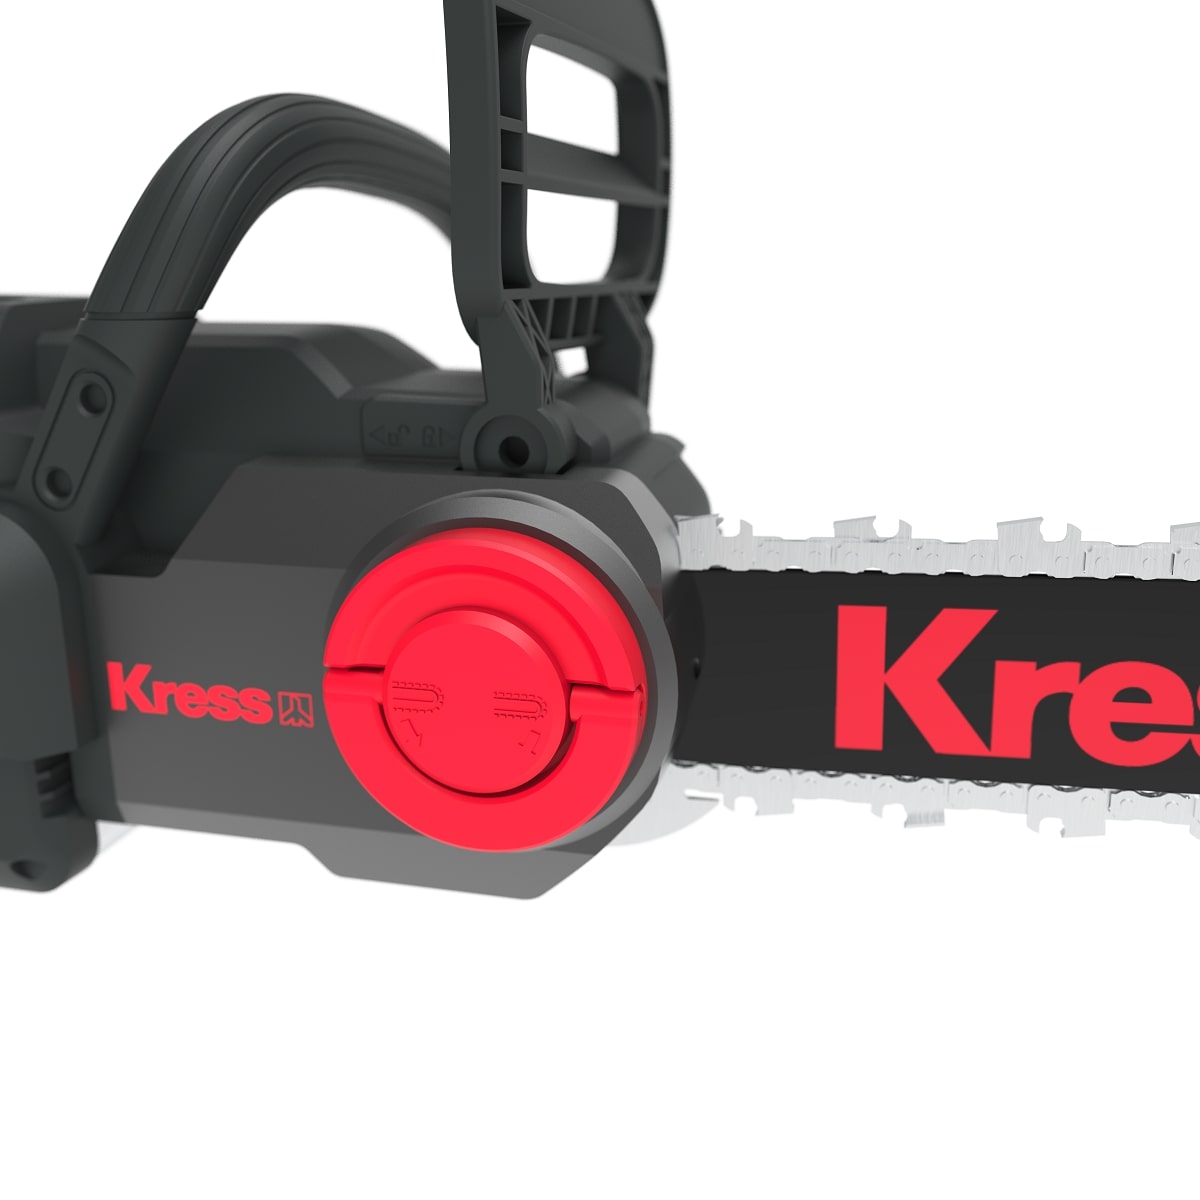 Kress KG367E 60V BL 35cm Chainsaw + Battery & Charger